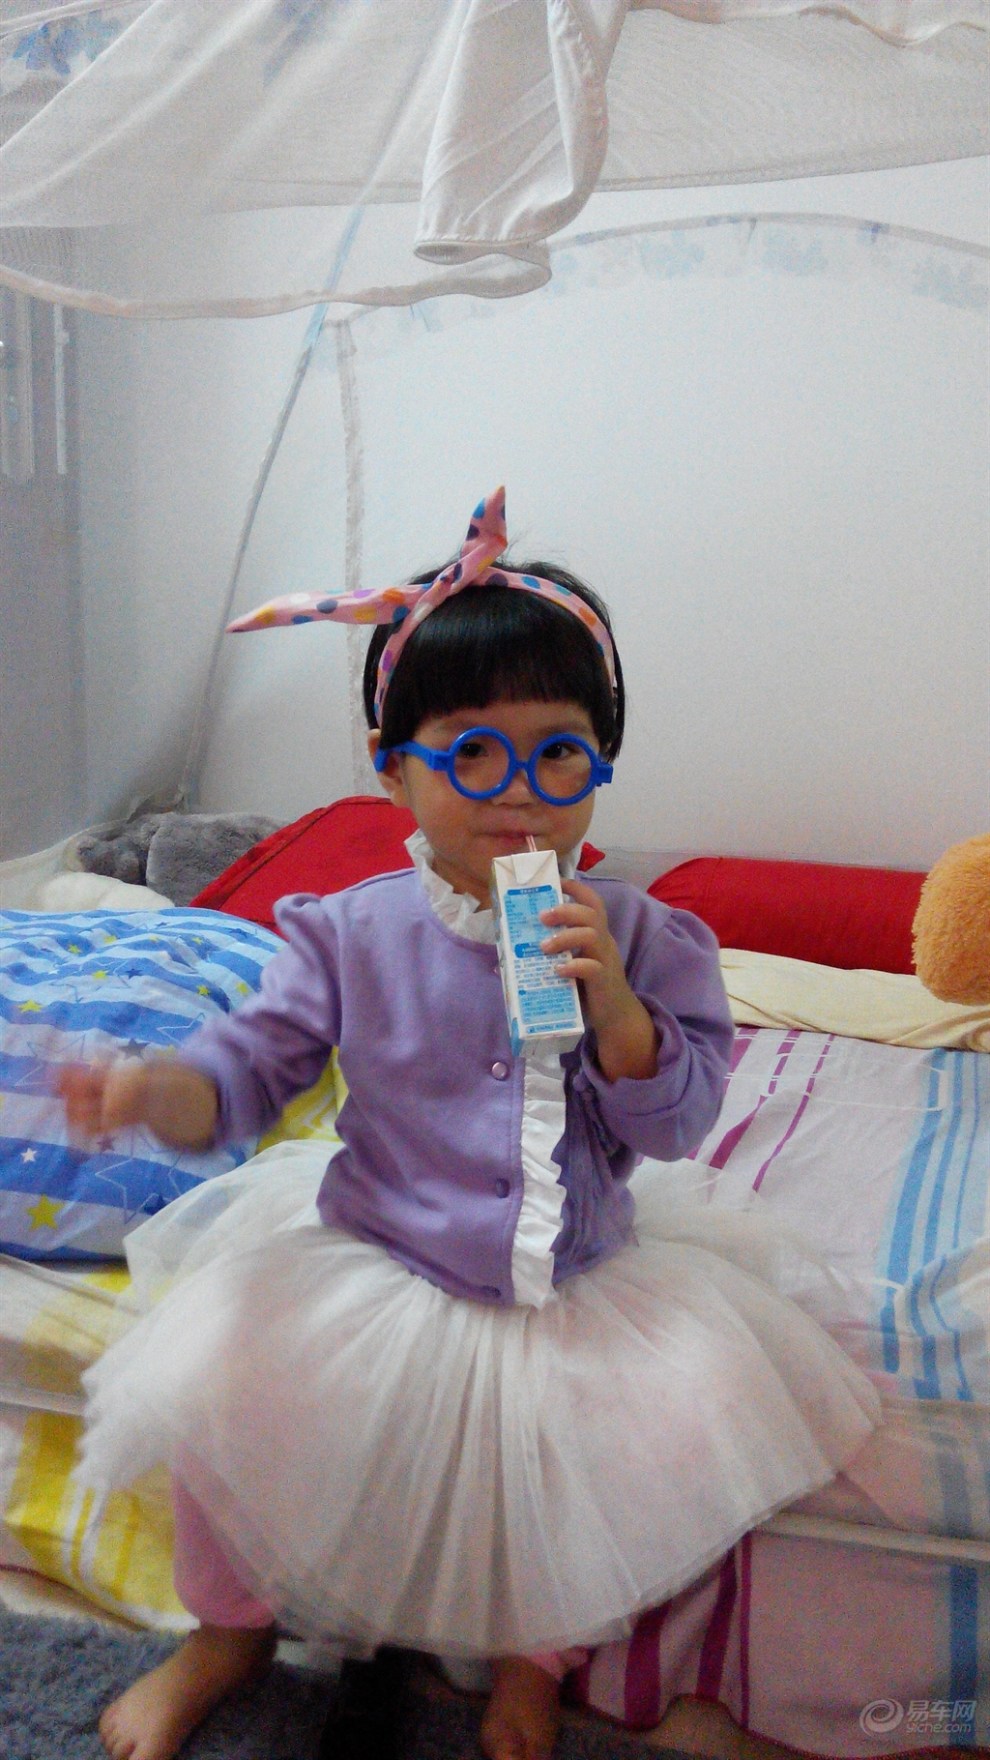 【【双dan狂欢】宝宝戴着眼镜喝酸奶!】_福建